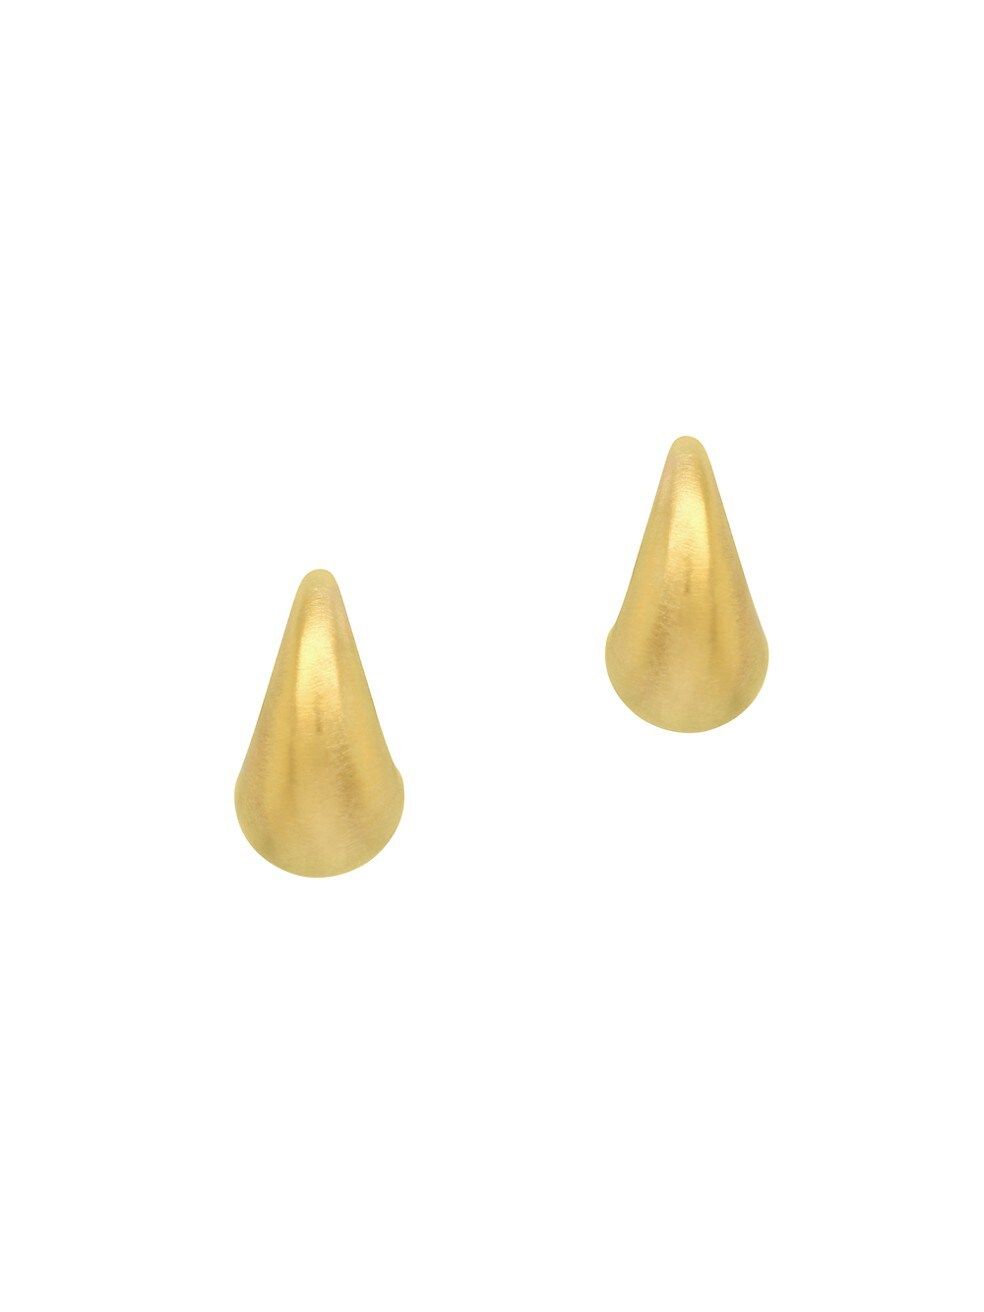 Origins Teardrop Brushed 22K Gold-Plated Huggie Earrings | Saks Fifth Avenue